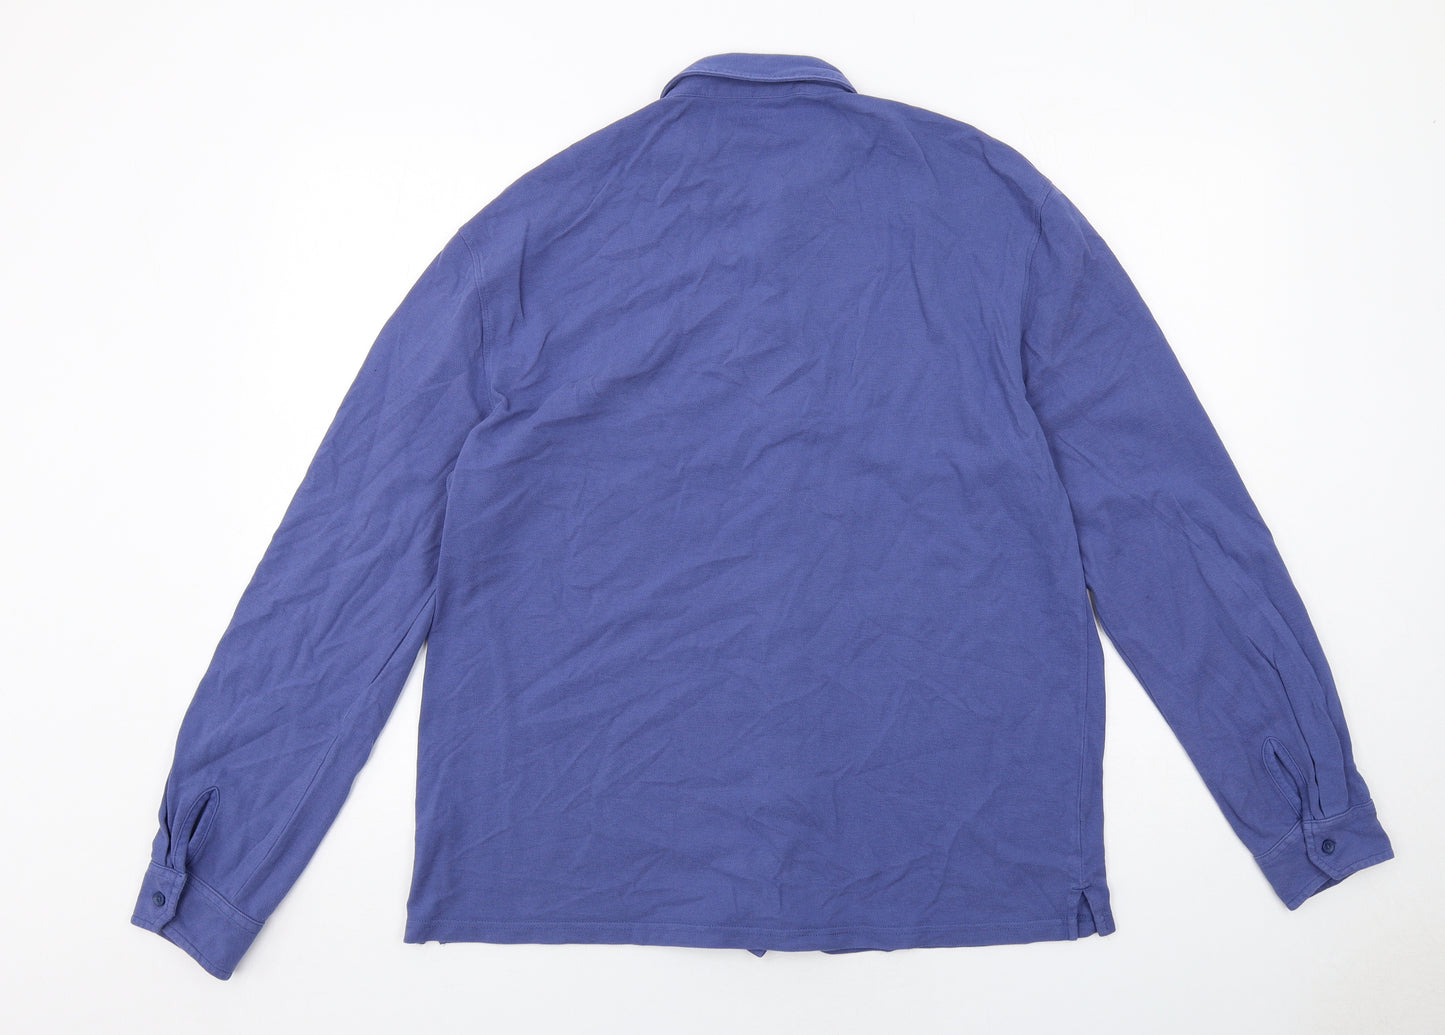 Spada Mens Blue Cotton Polo Size 2XL Collared Button